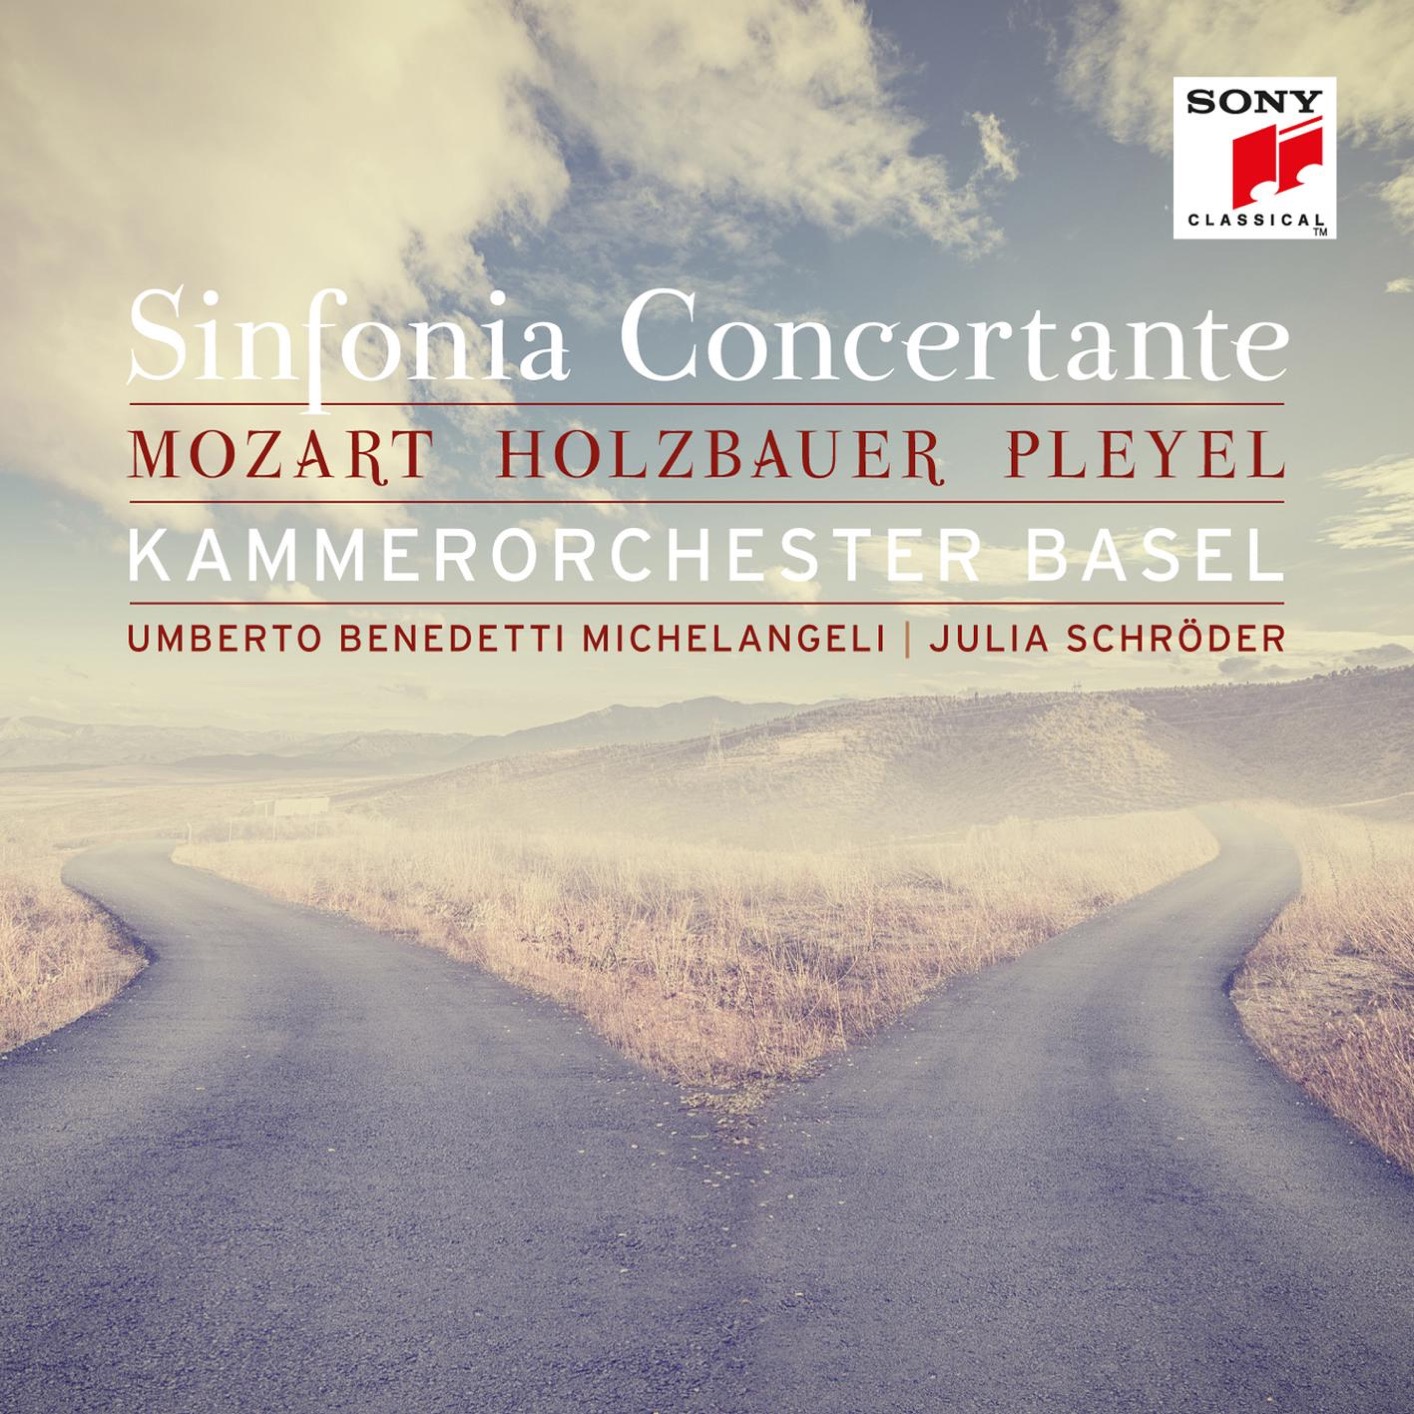 Kammerorchester Basel & Julia Schroder – Mozart, Holzbauer & Pleyel: Sinfonia Concertante (2017) [Qobuz FLAC 24bit/96kHz]